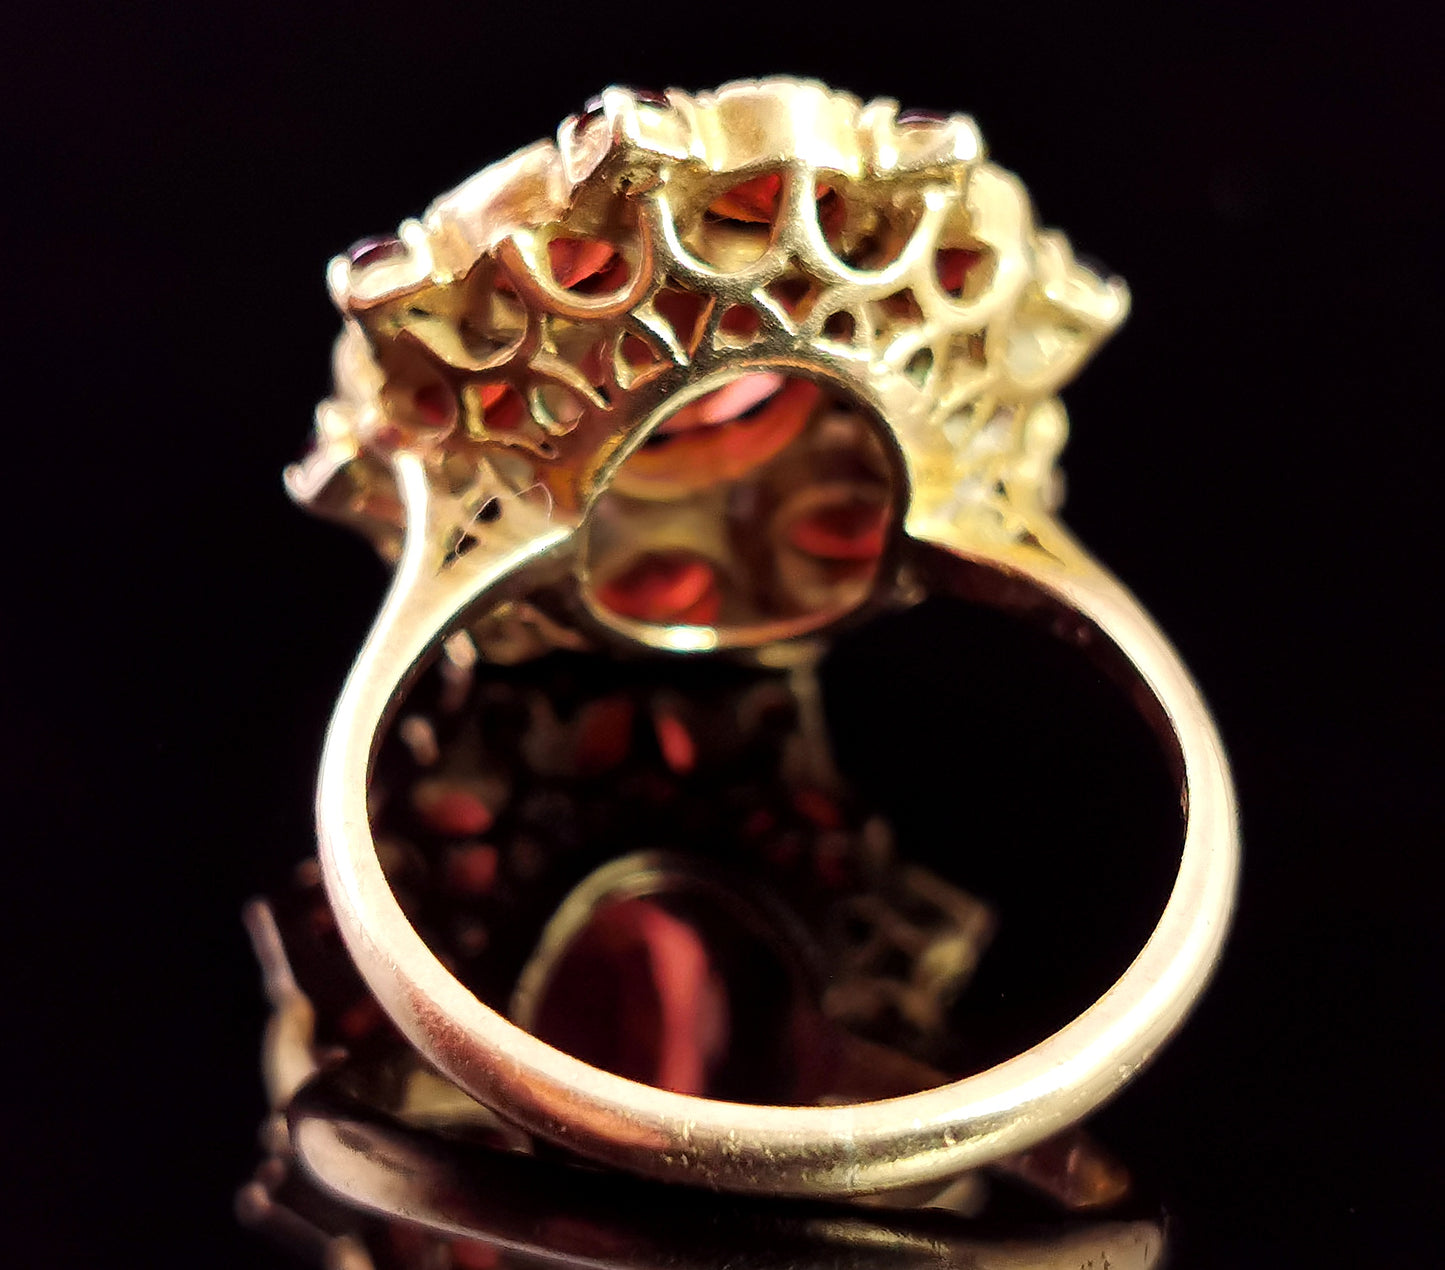 Vintage Garnet cluster ring, 9ct gold, statement ring